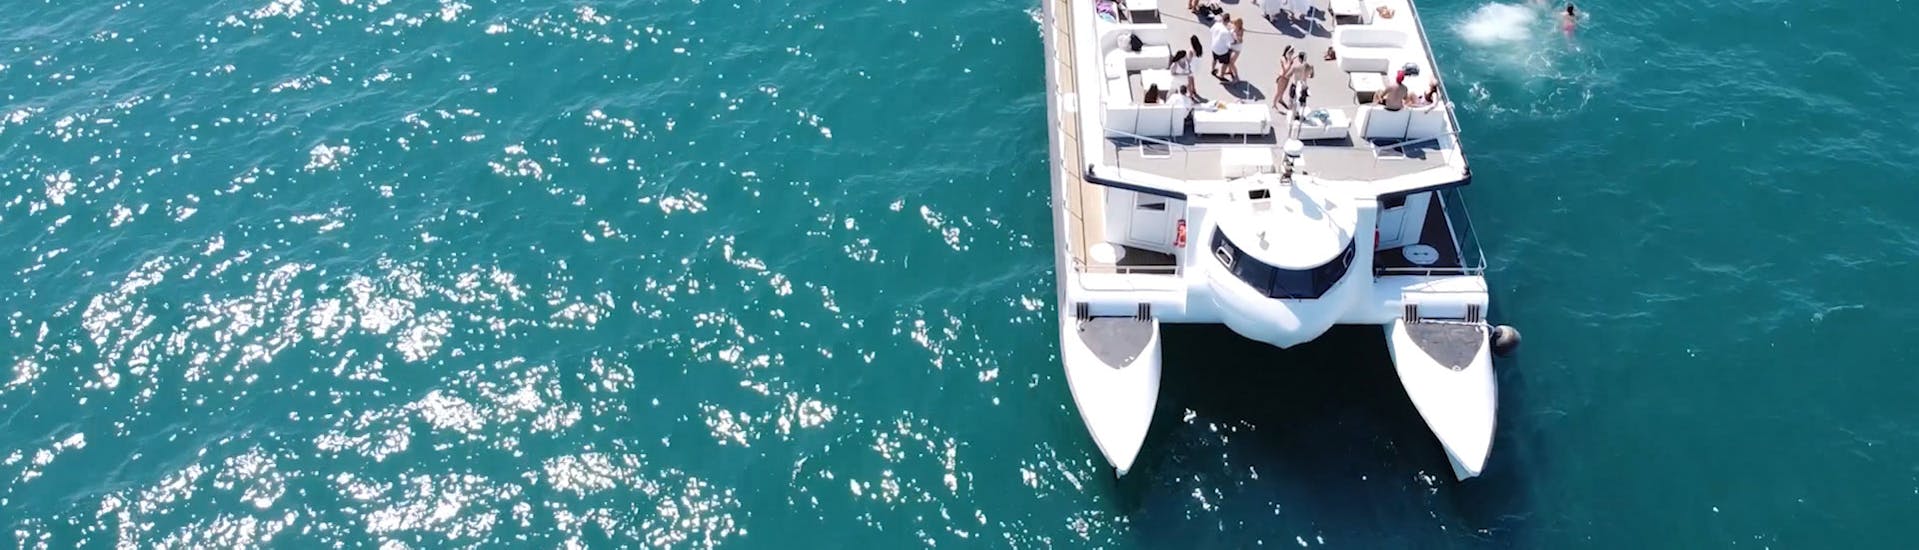 Gita in catamarano da Valencia a Port Saplatja con bagno in mare e visita turistica.